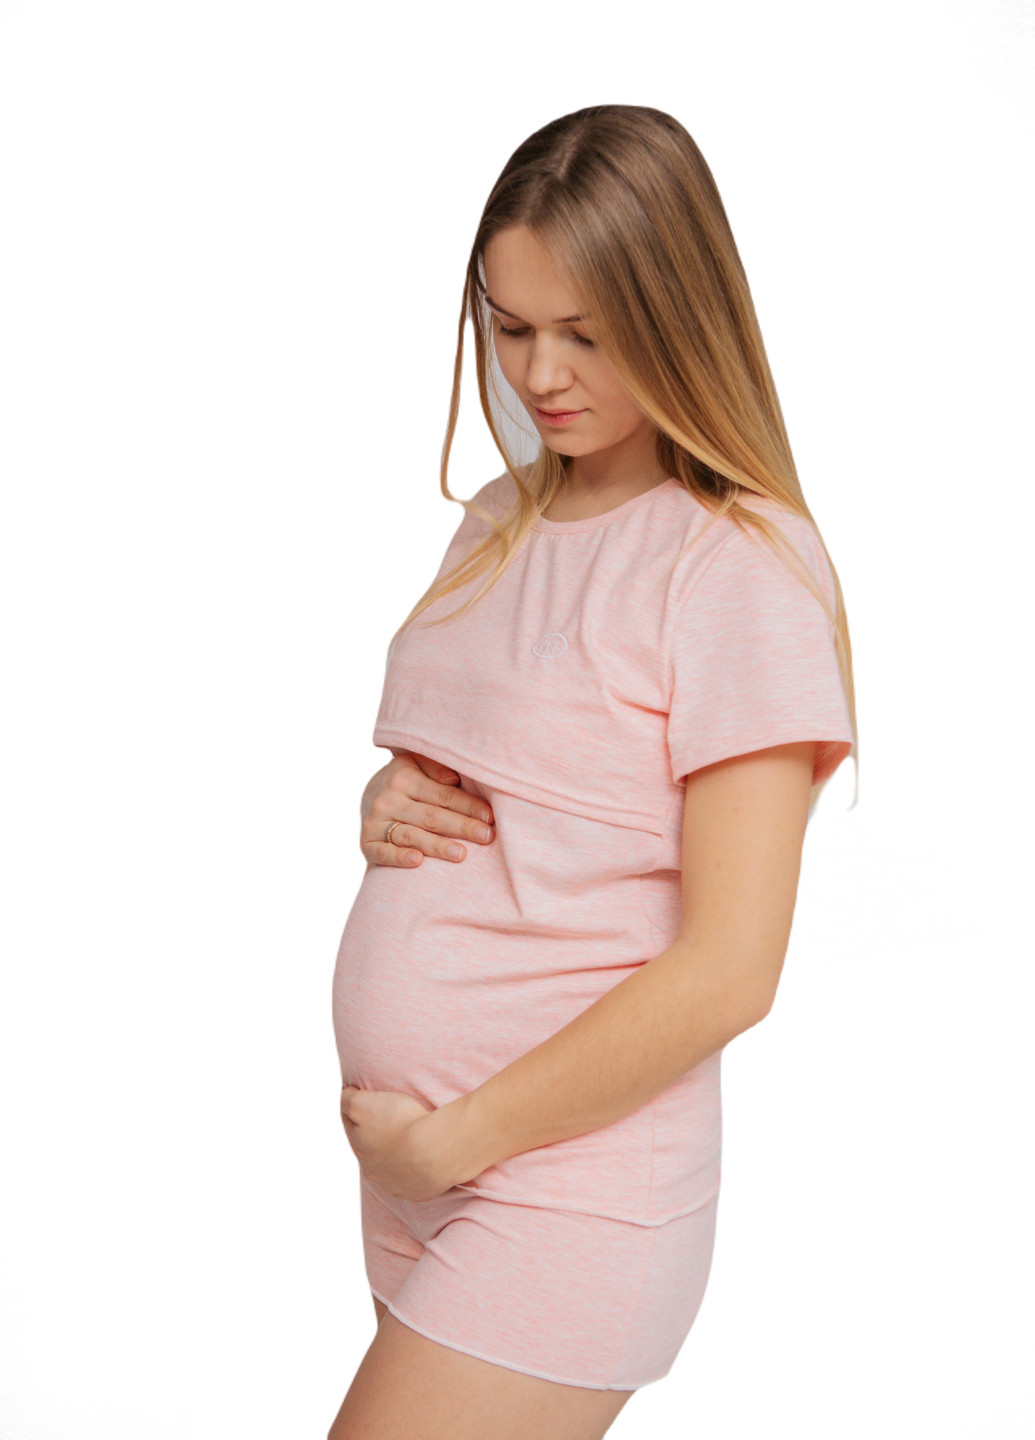 Розовая всесезон 88296028829(55)06 пижама для беременных и кормящих с секретом для кормления (футболка + шорты) розовая футболка + шорты HN Рита